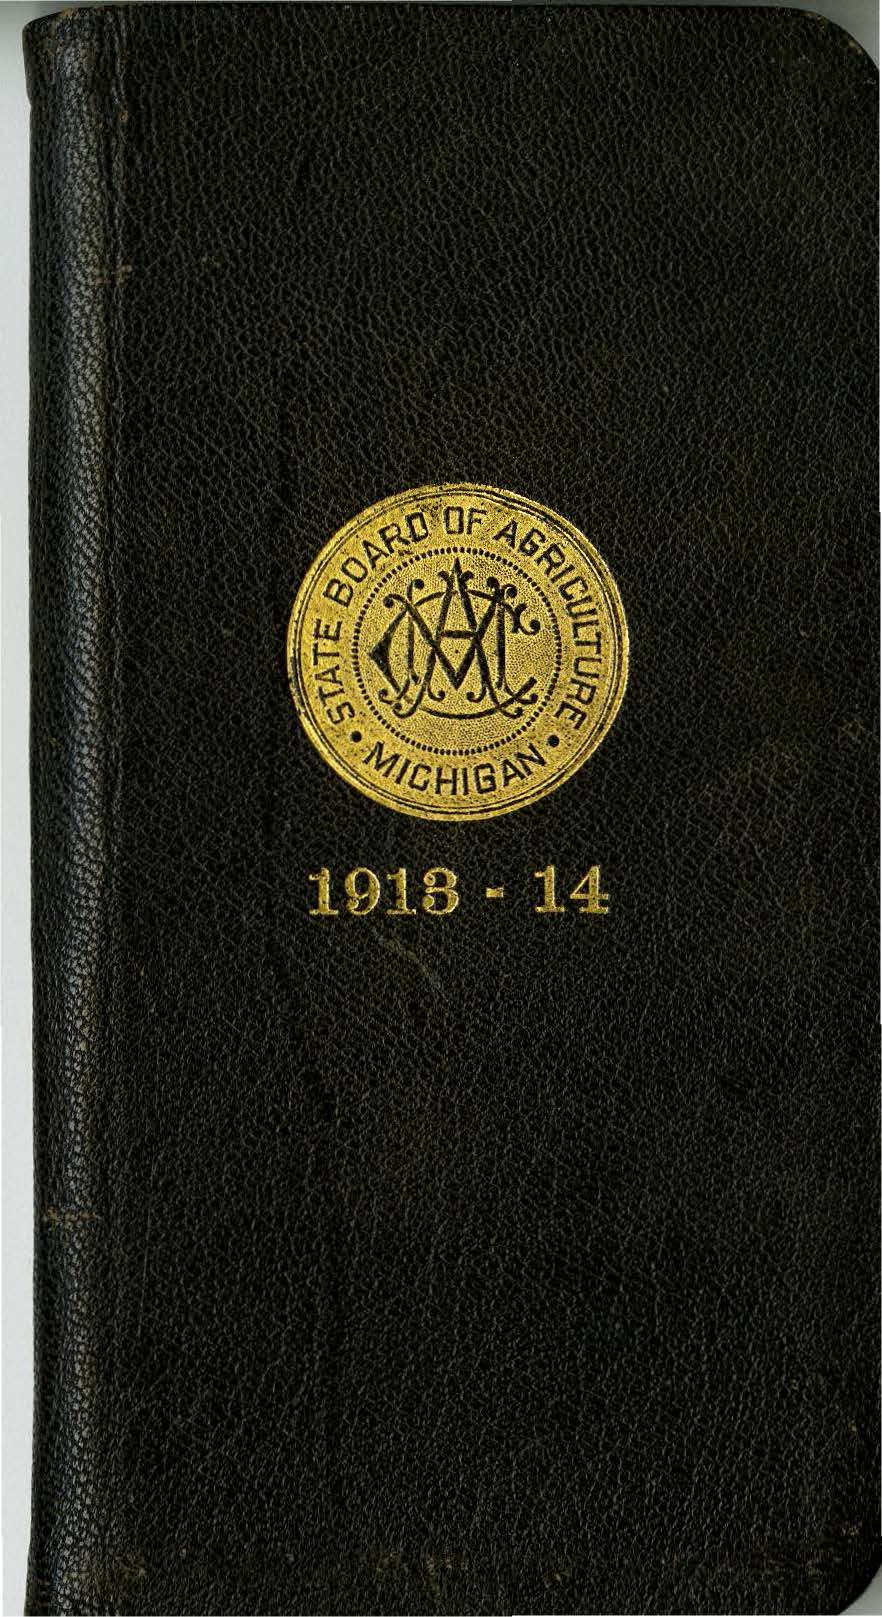 Student Handbook, 1913-1914